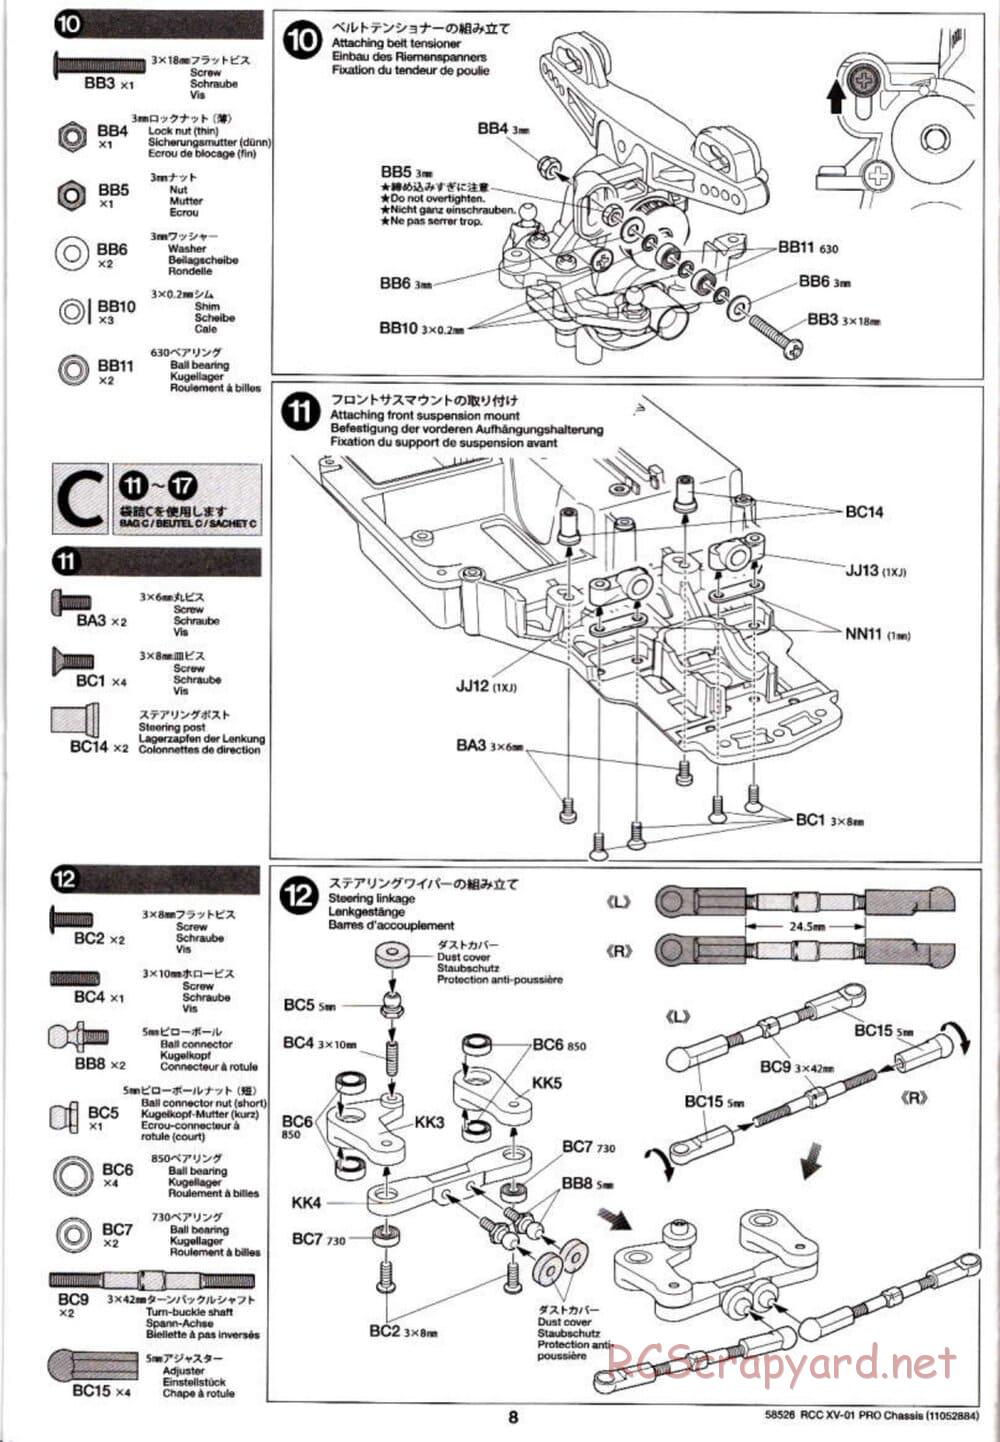 Tamiya - XV-01 PRO Chassis - Manual - Page 8